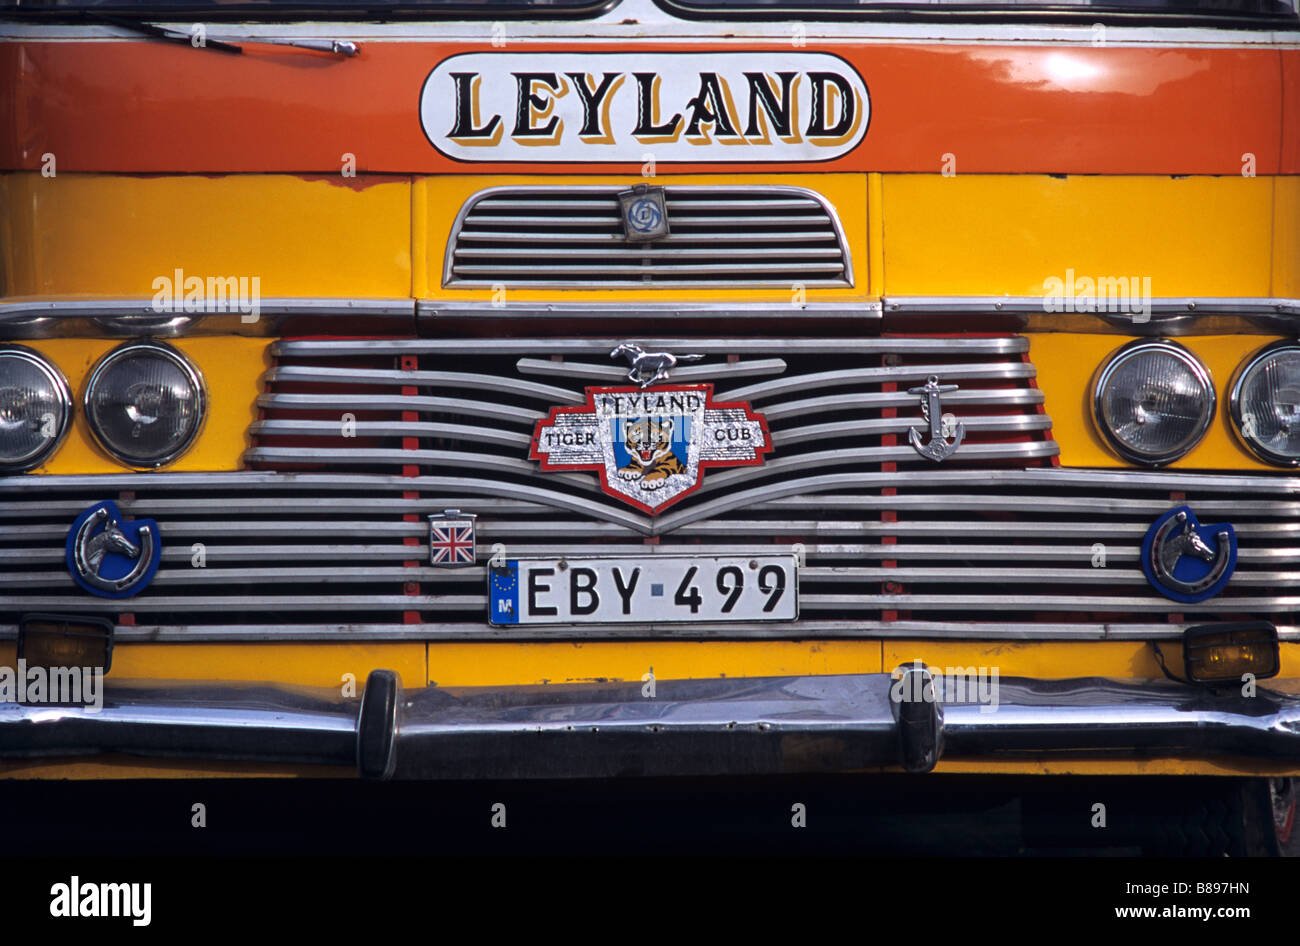 Calandre Chrome & Bonnet de 1960 Leyland Bus, bus de Malte, La Valette, Malte Banque D'Images